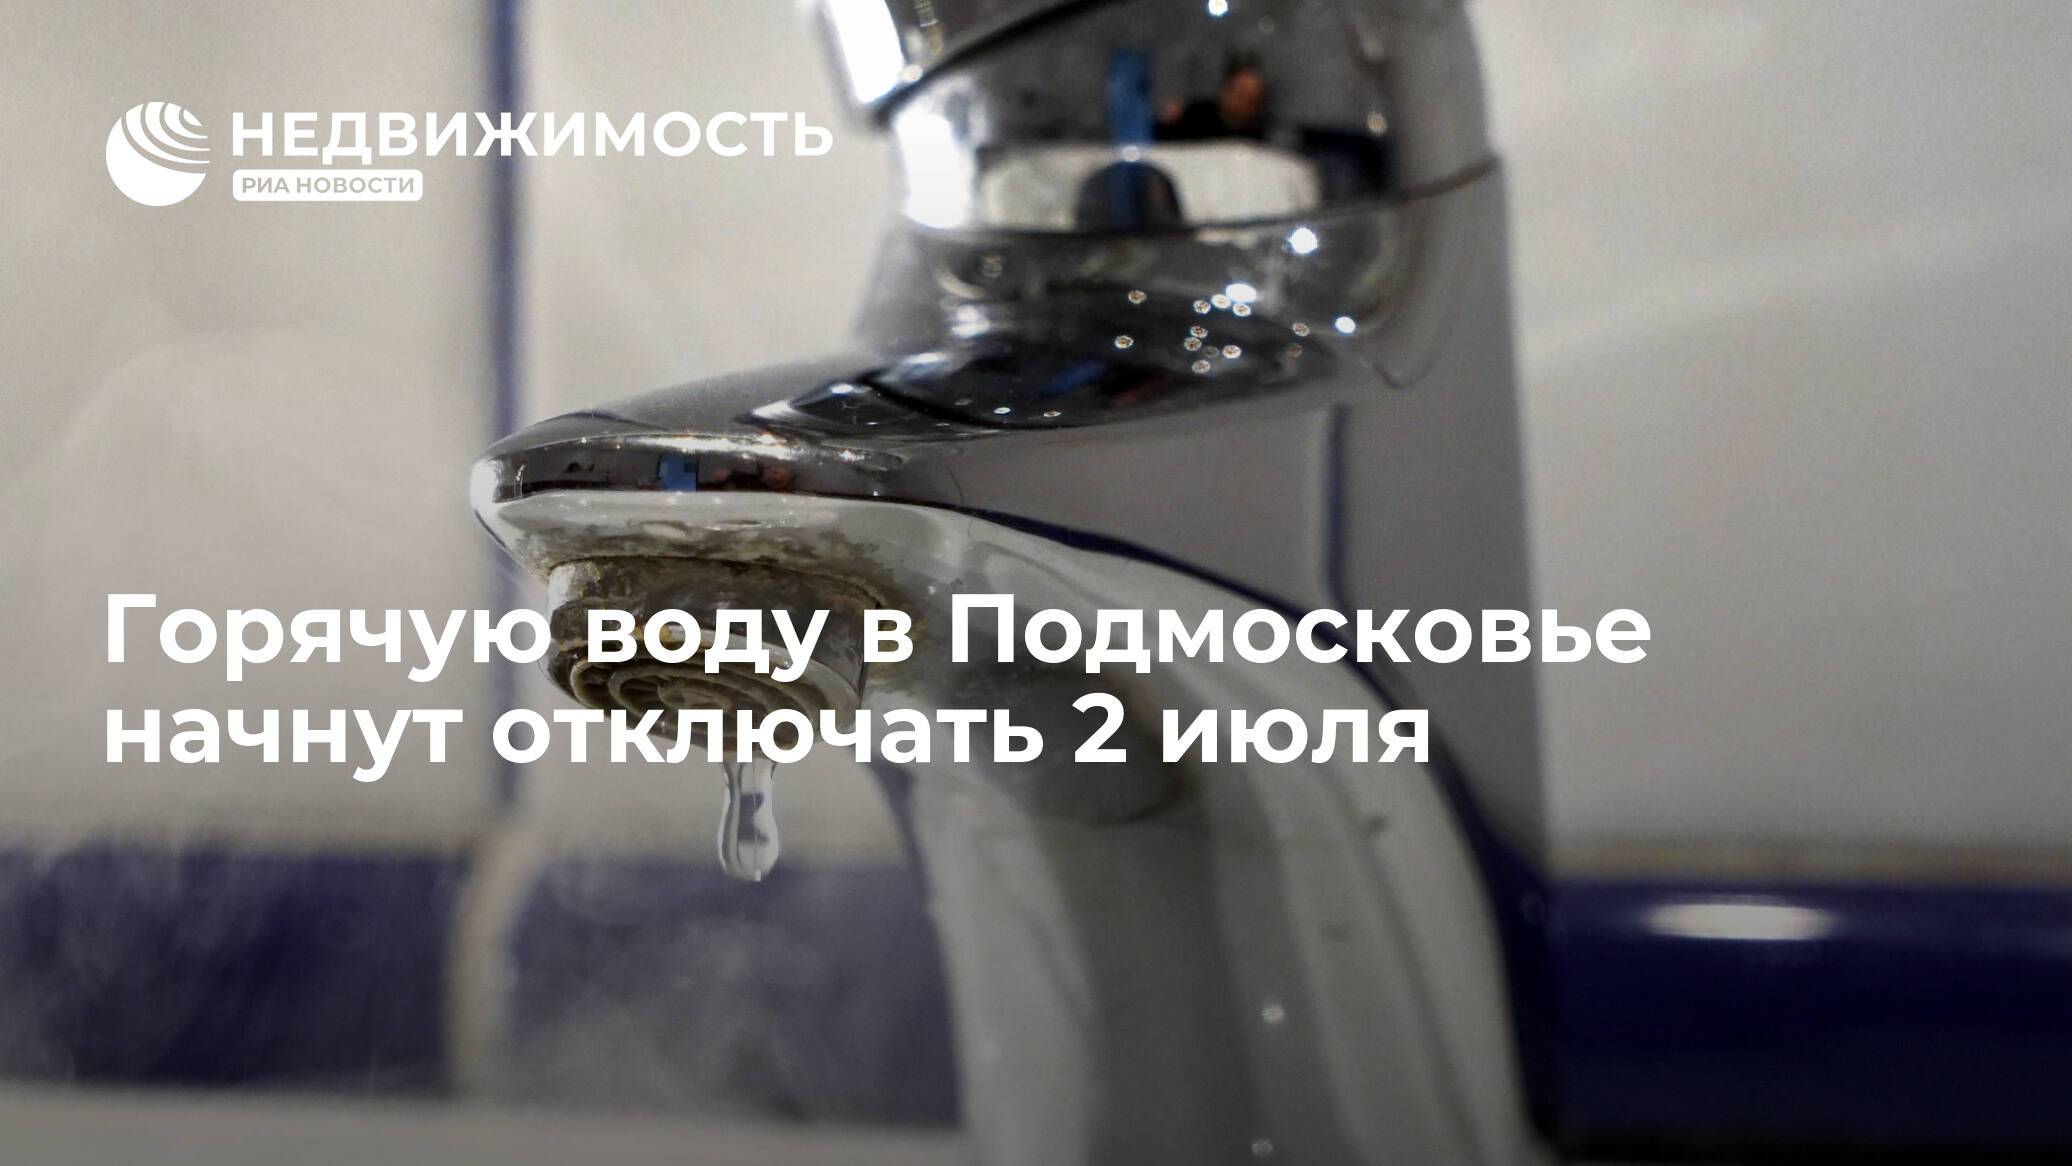 Портал "жкх" / с 1 июля в москве начнут отключать горячую воду